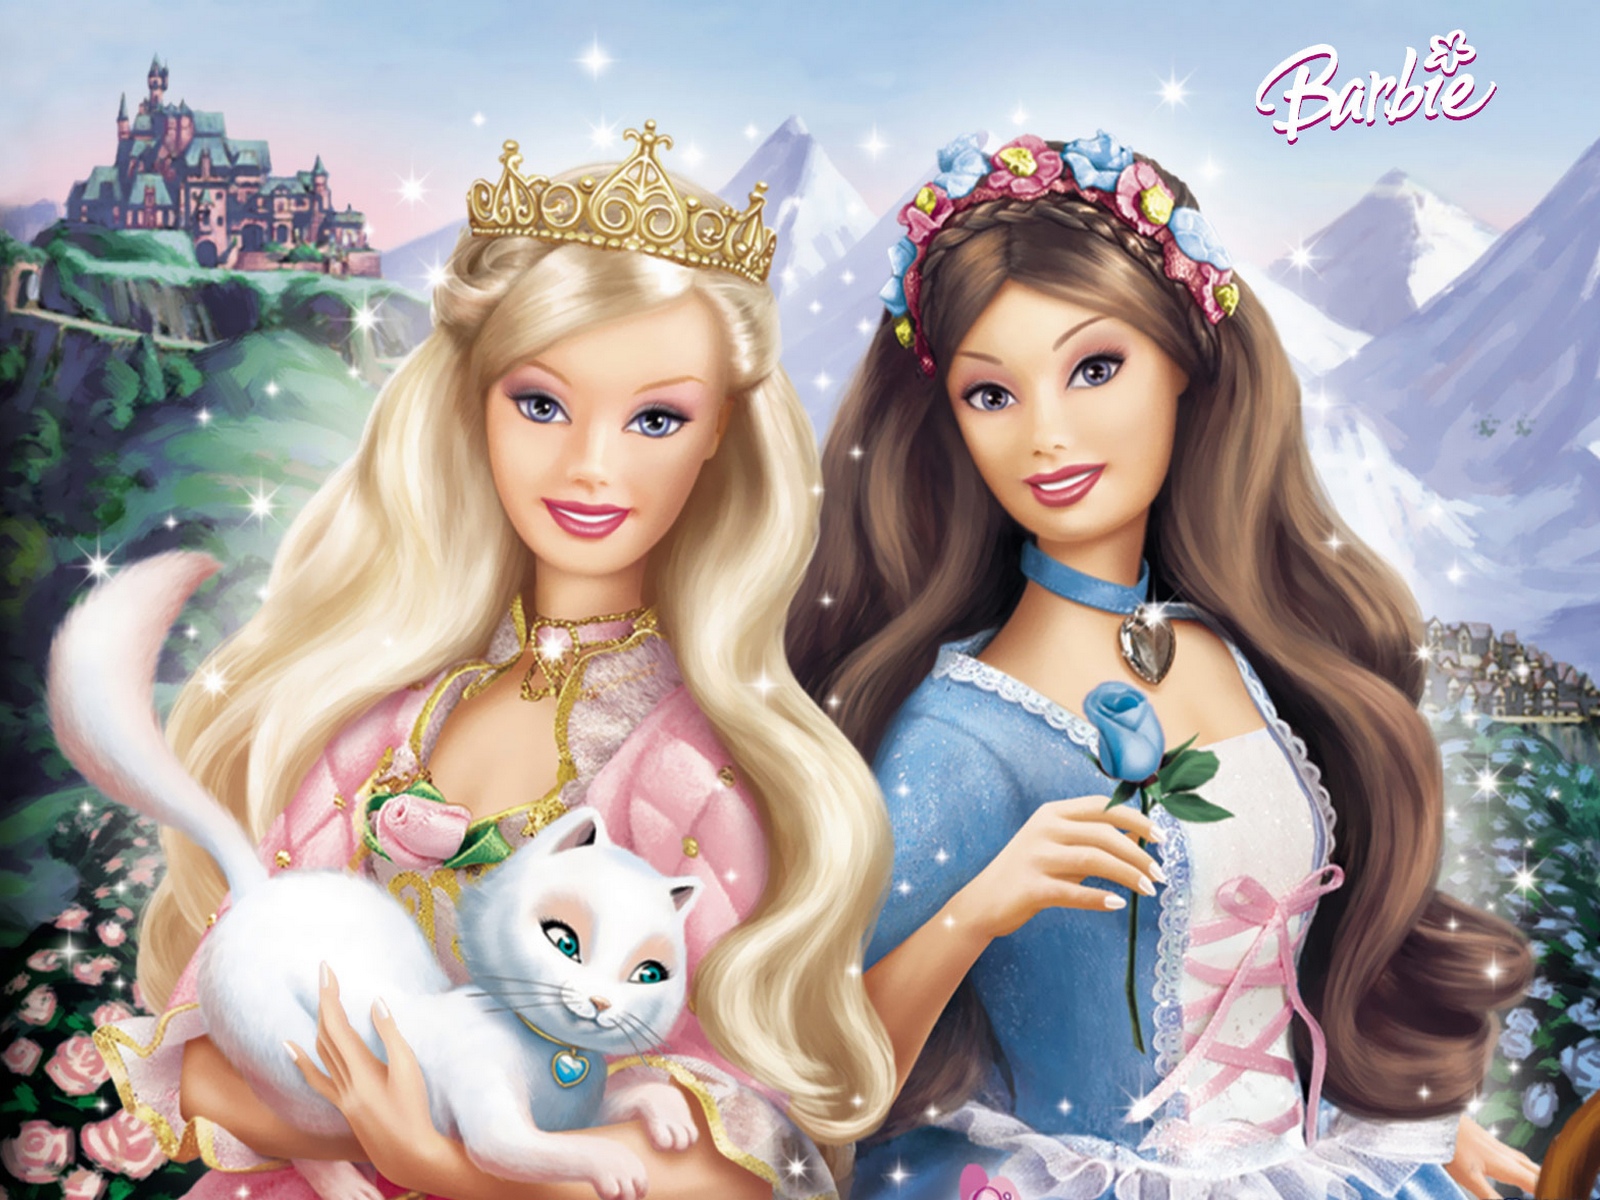 Fondos de Pantalla Barbie Animación descargar imagenes